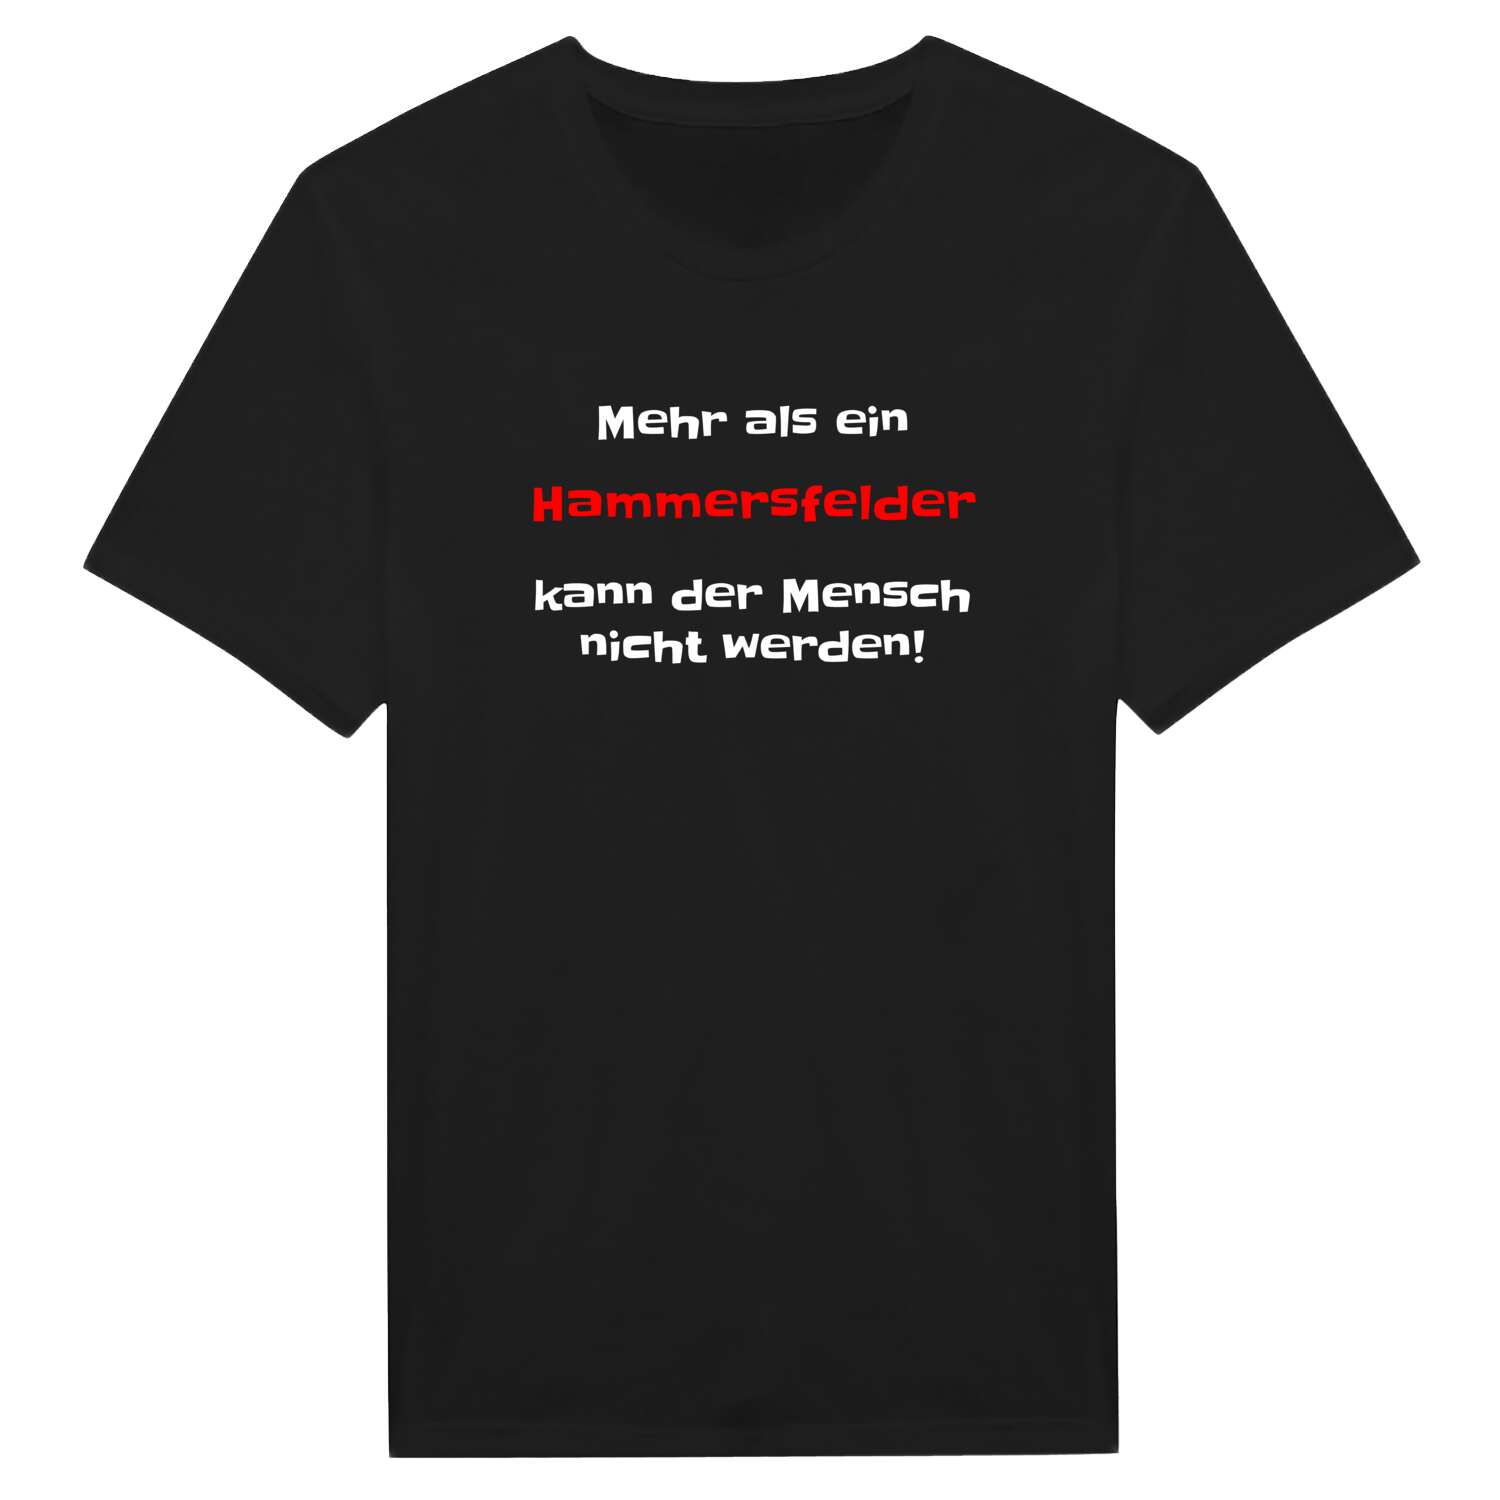 Hammersfeld T-Shirt »Mehr als ein«